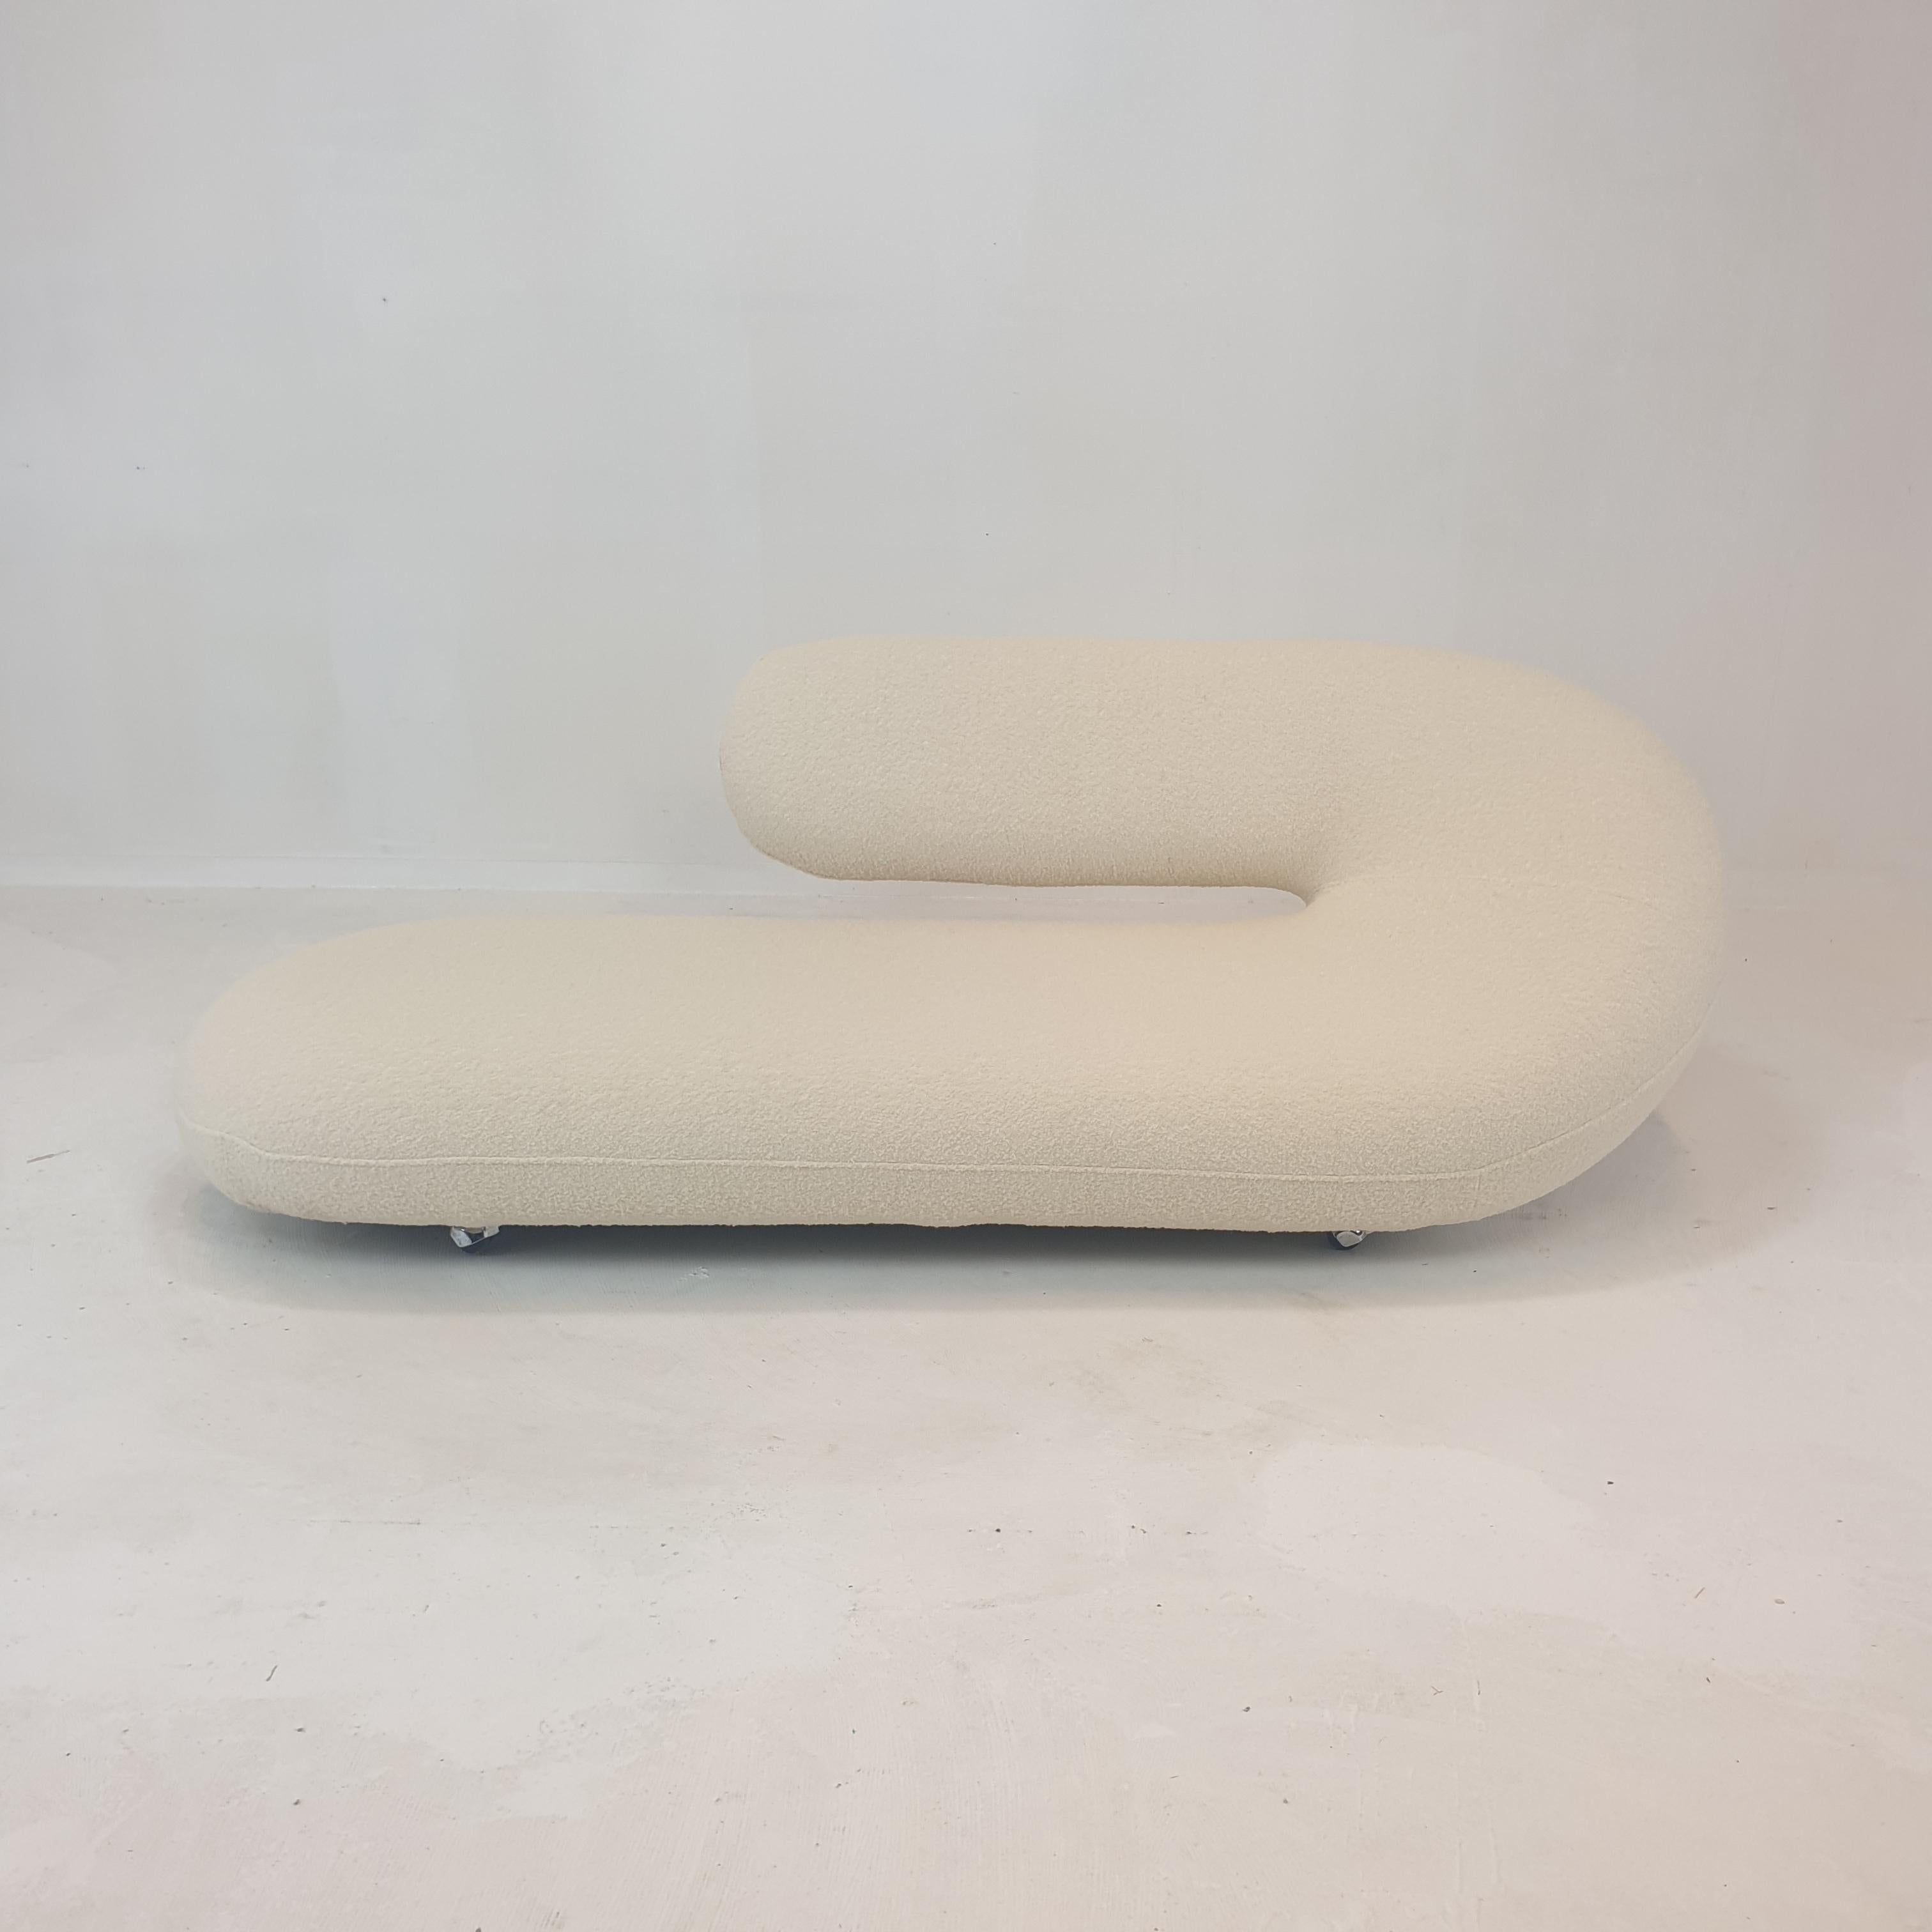 Ce magnifique modèle de chaise longue ou de canapé Cleopatra a été conçu par Geoffrey Harcourt pour Artifort dans les années 70. 

Cette pièce originale d'Artifort vient d'être retapissée avec un tissu en laine italienne doux et agréable, elle est